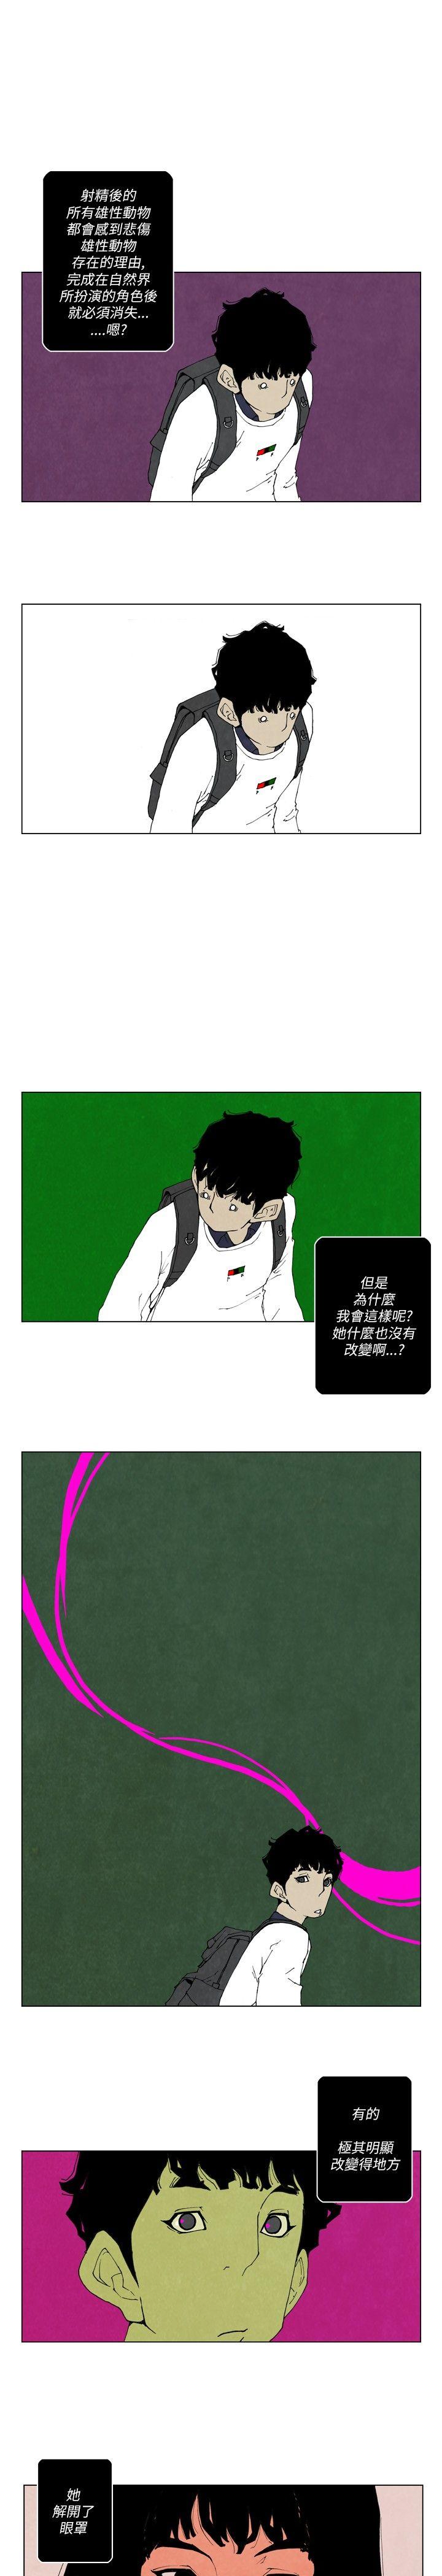 韩国污漫画 10人10色：初體驗 裴民奇-mug(下) 7